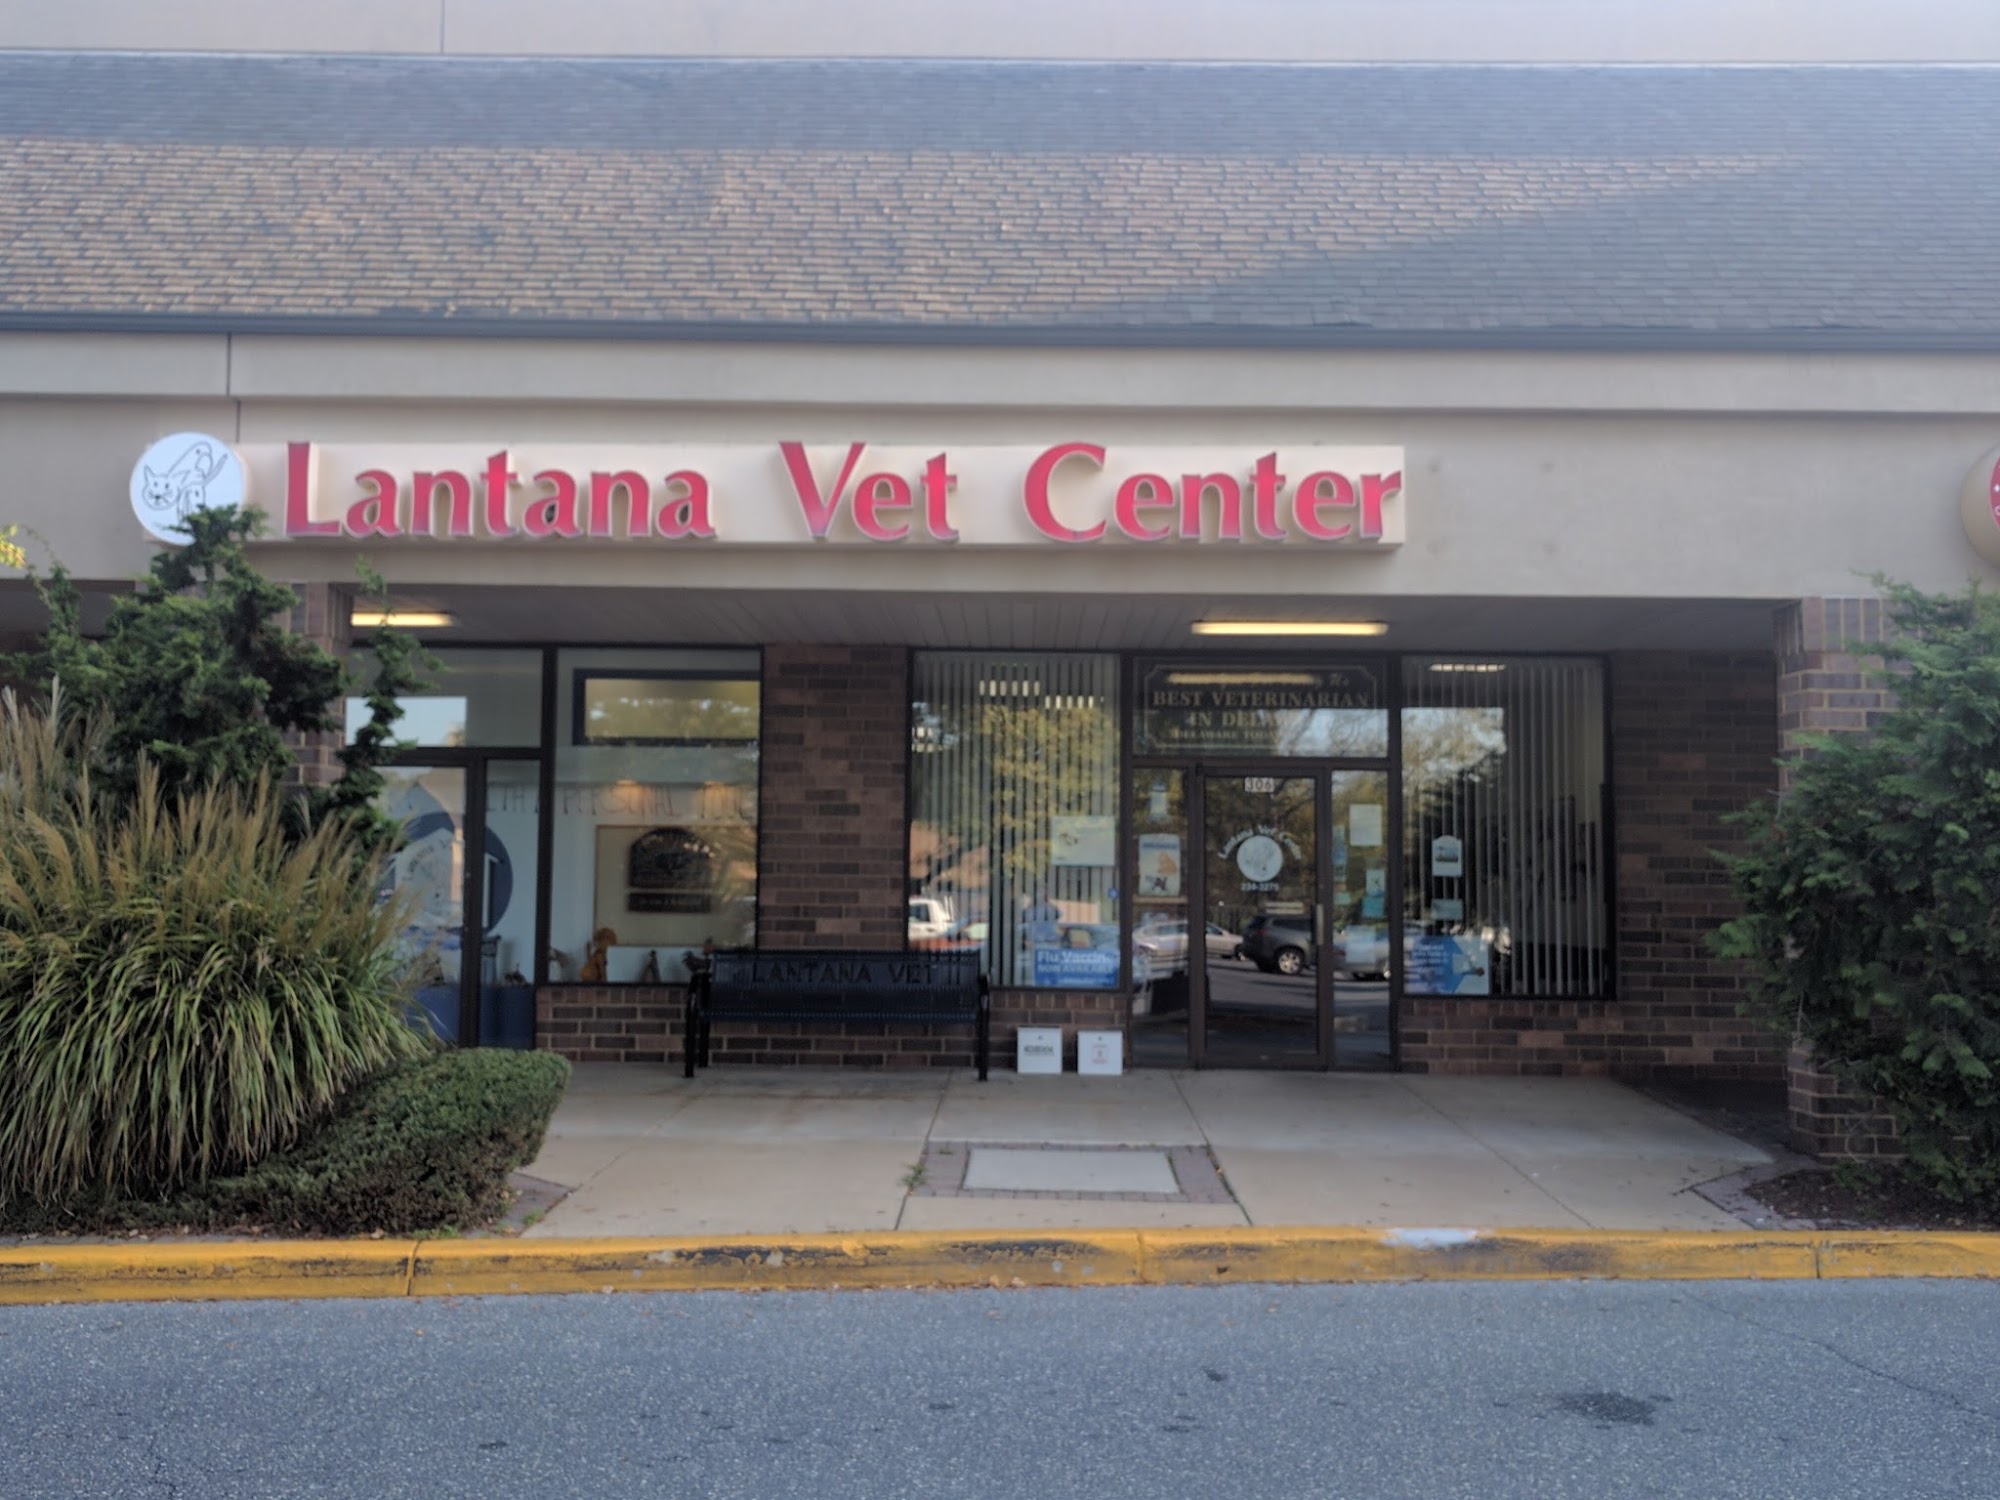 Lantana Veterinary Center